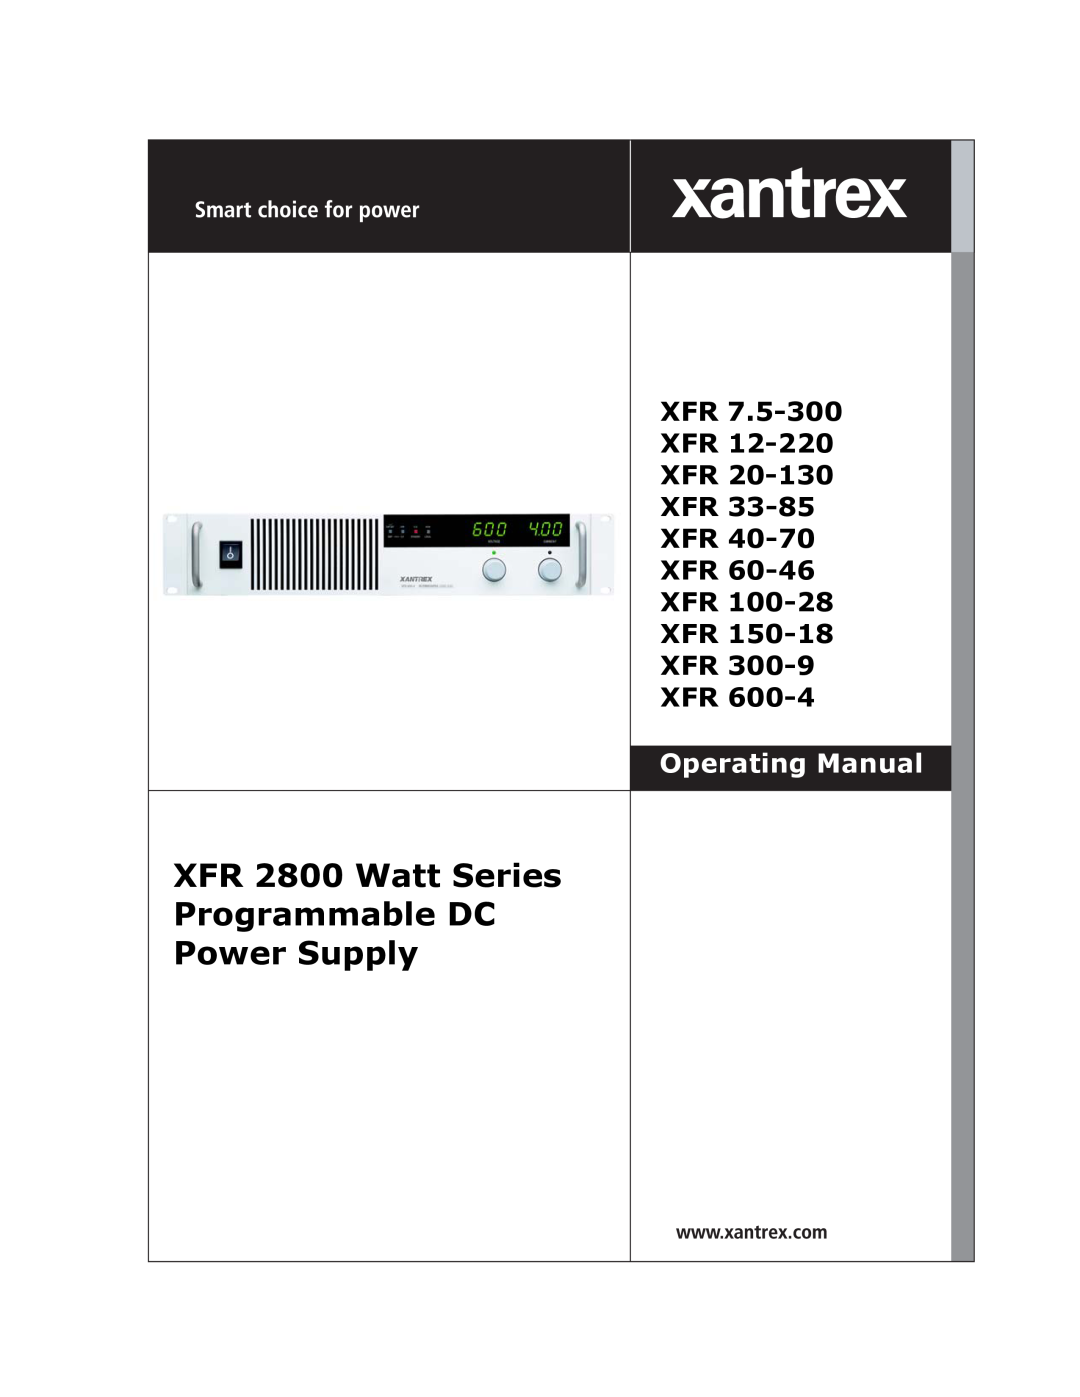 Xantrex Technology manual XFR 2800 Watt Series Programmable DC Power Supply, Xfr Xfr Xfr Xfr Xfr Xfr Xfr Xfr Xfr Xfr 